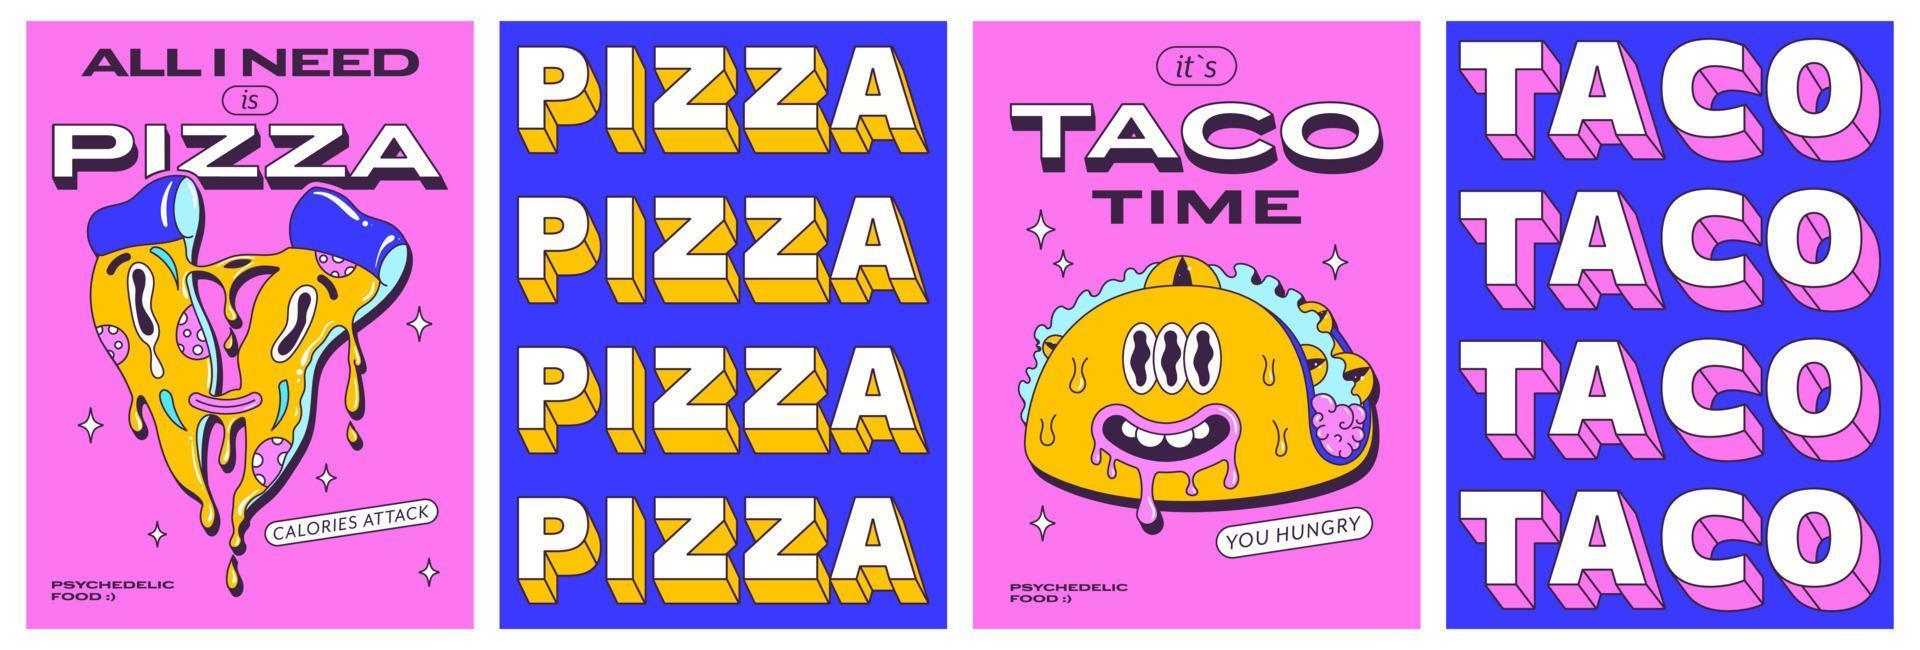 di moda psichedelico manifesti impostato con divertente veloce cibo personaggi. trippy Pizza fetta e pazzo moderno taco. davanti e indietro lato manifesto design. vettore illustrazione.